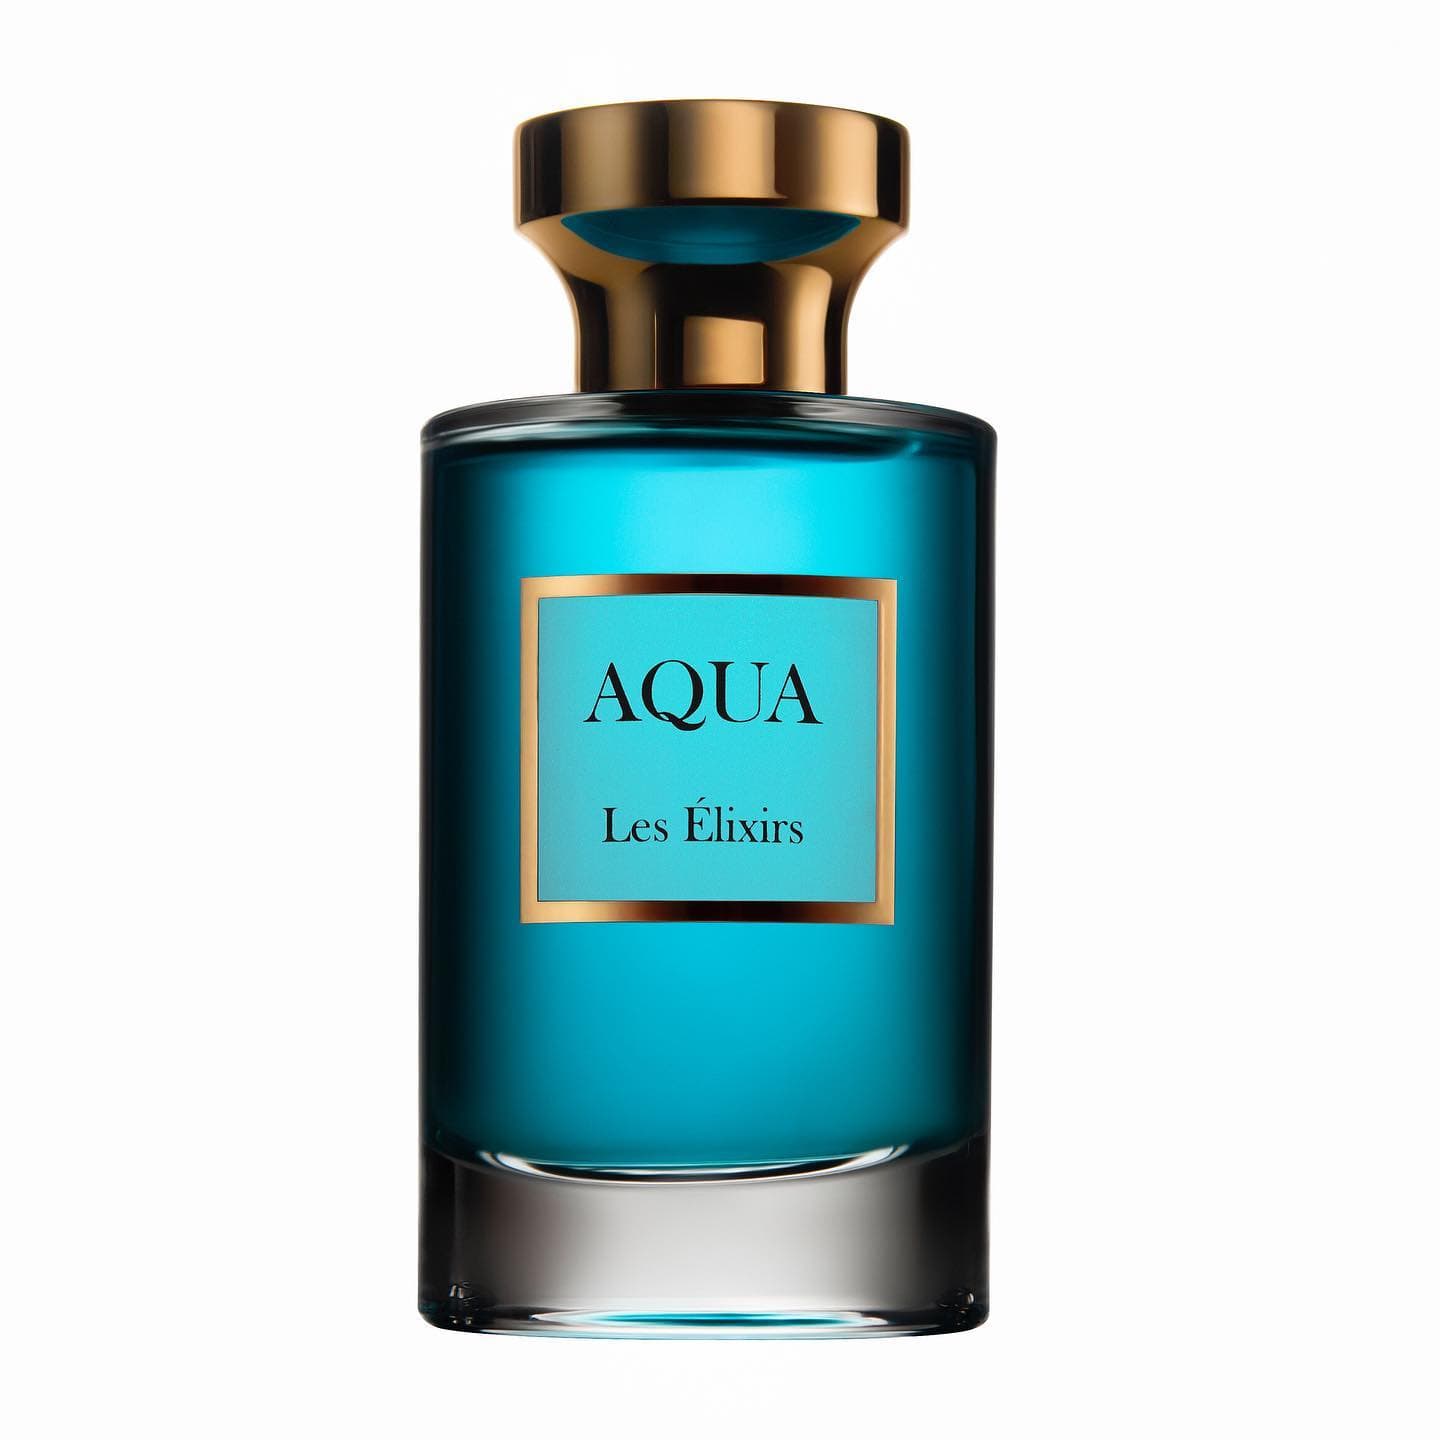  AQUA by Les Elixirs Les Elixirs Perfumarie